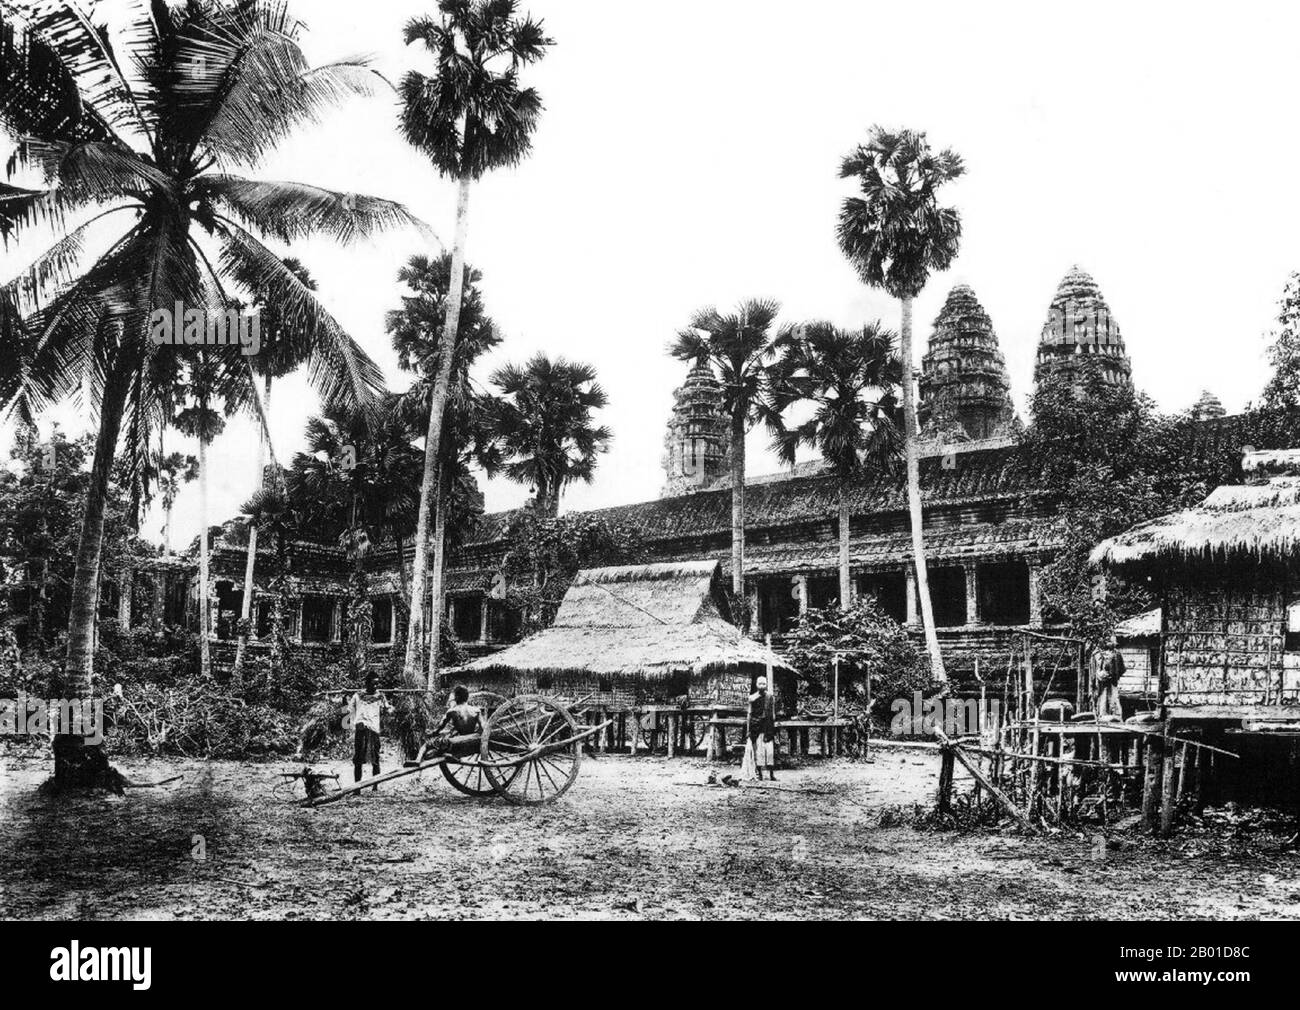 Cambodge: Palmiers à sucre, maisons à pilotis et une voiturette à Angkor Wat, 1909. Angkor Wat a été construit pour le roi Suryavarman II (r. 1113-1150) au début du 12th siècle comme son temple d'état et capitale. En tant que temple le mieux préservé du site d'Angkor, il est le seul à être resté un important centre religieux depuis sa fondation – d'abord hindou, dédié au dieu Vishnu, puis bouddhiste. C'est le plus grand bâtiment religieux au monde. Le temple est au sommet du style classique élevé de l'architecture khmère. Il est devenu un symbole du Cambodge, apparaissant sur son drapeau national. Banque D'Images